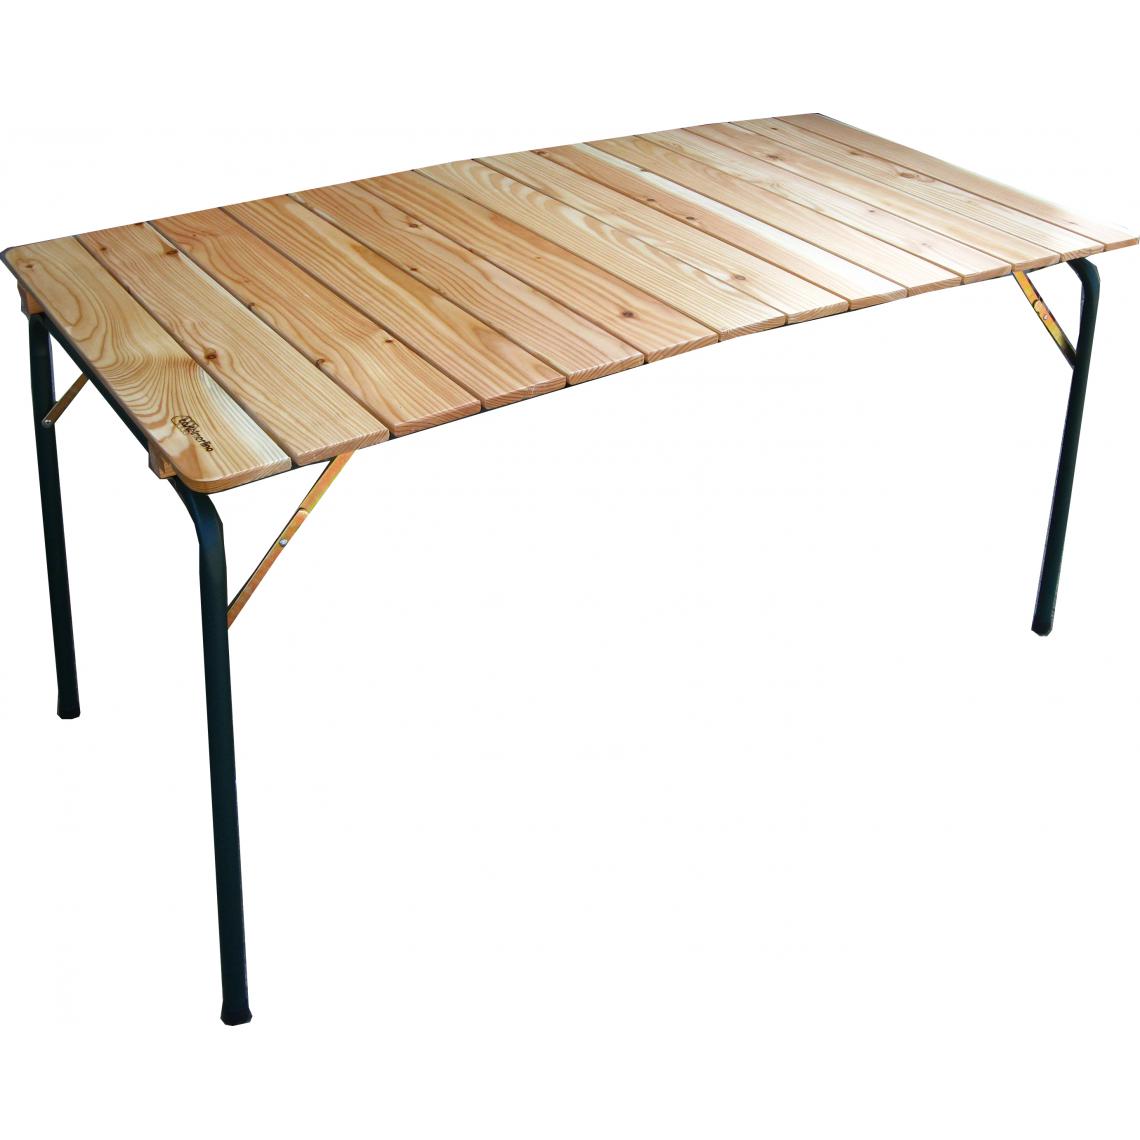 Alter - Table pliante double en acier et bois de mélèze, gris et marron, 140 x 70 x h72 cm - Tables à manger